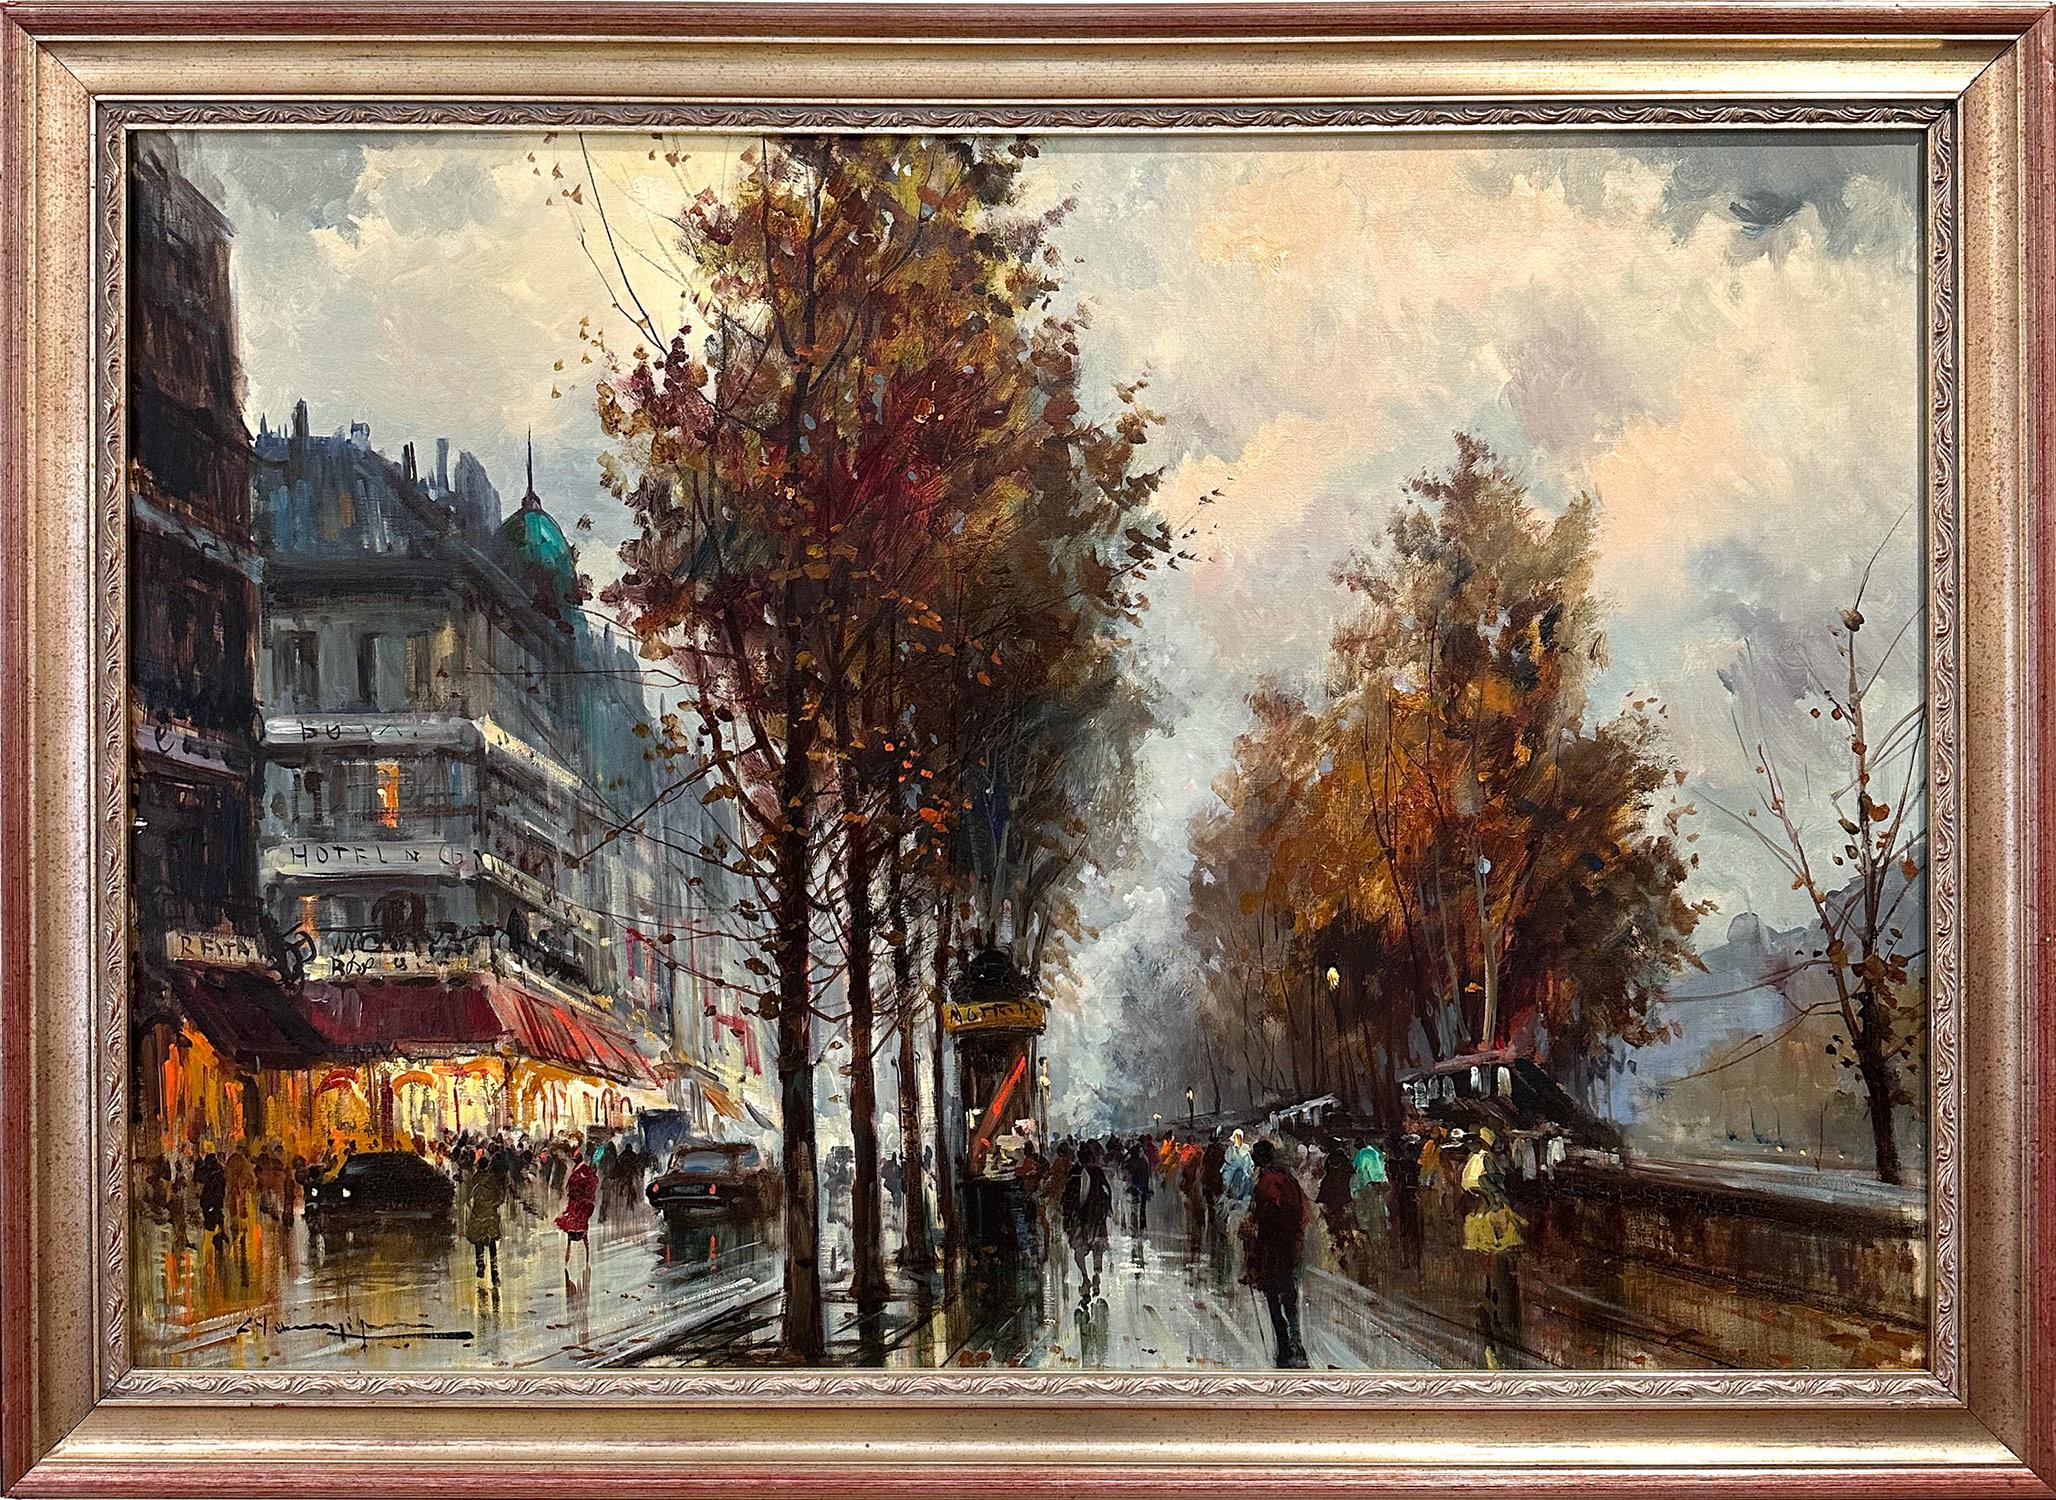 R. Champignon Landscape Painting - "Along the Seine by Hotel de Paris" 20th Century Post-Impressionist Oil Painting